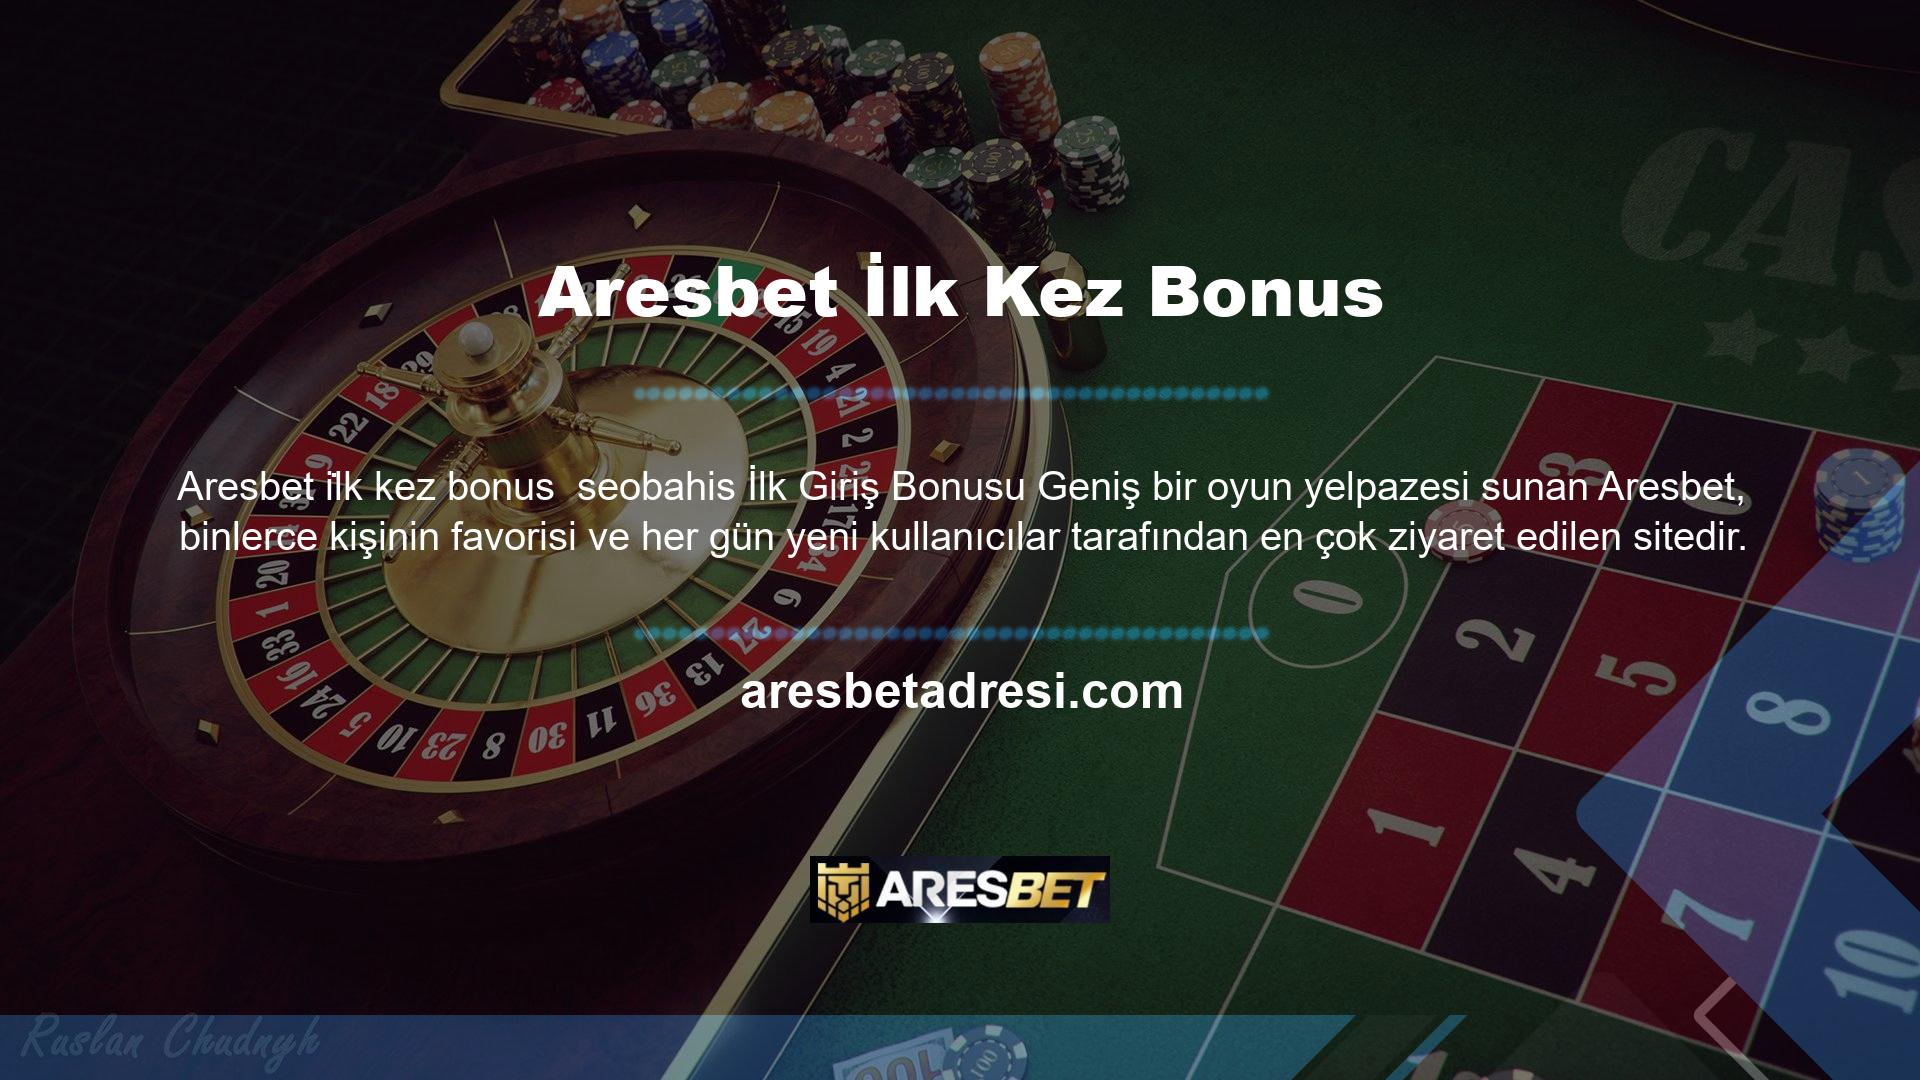 Casino oyunları ve casino denilince akla ilk gelen, kullanıcılarına çok çeşitli aktiviteler ve bonuslar sunan Aresbet oluyor